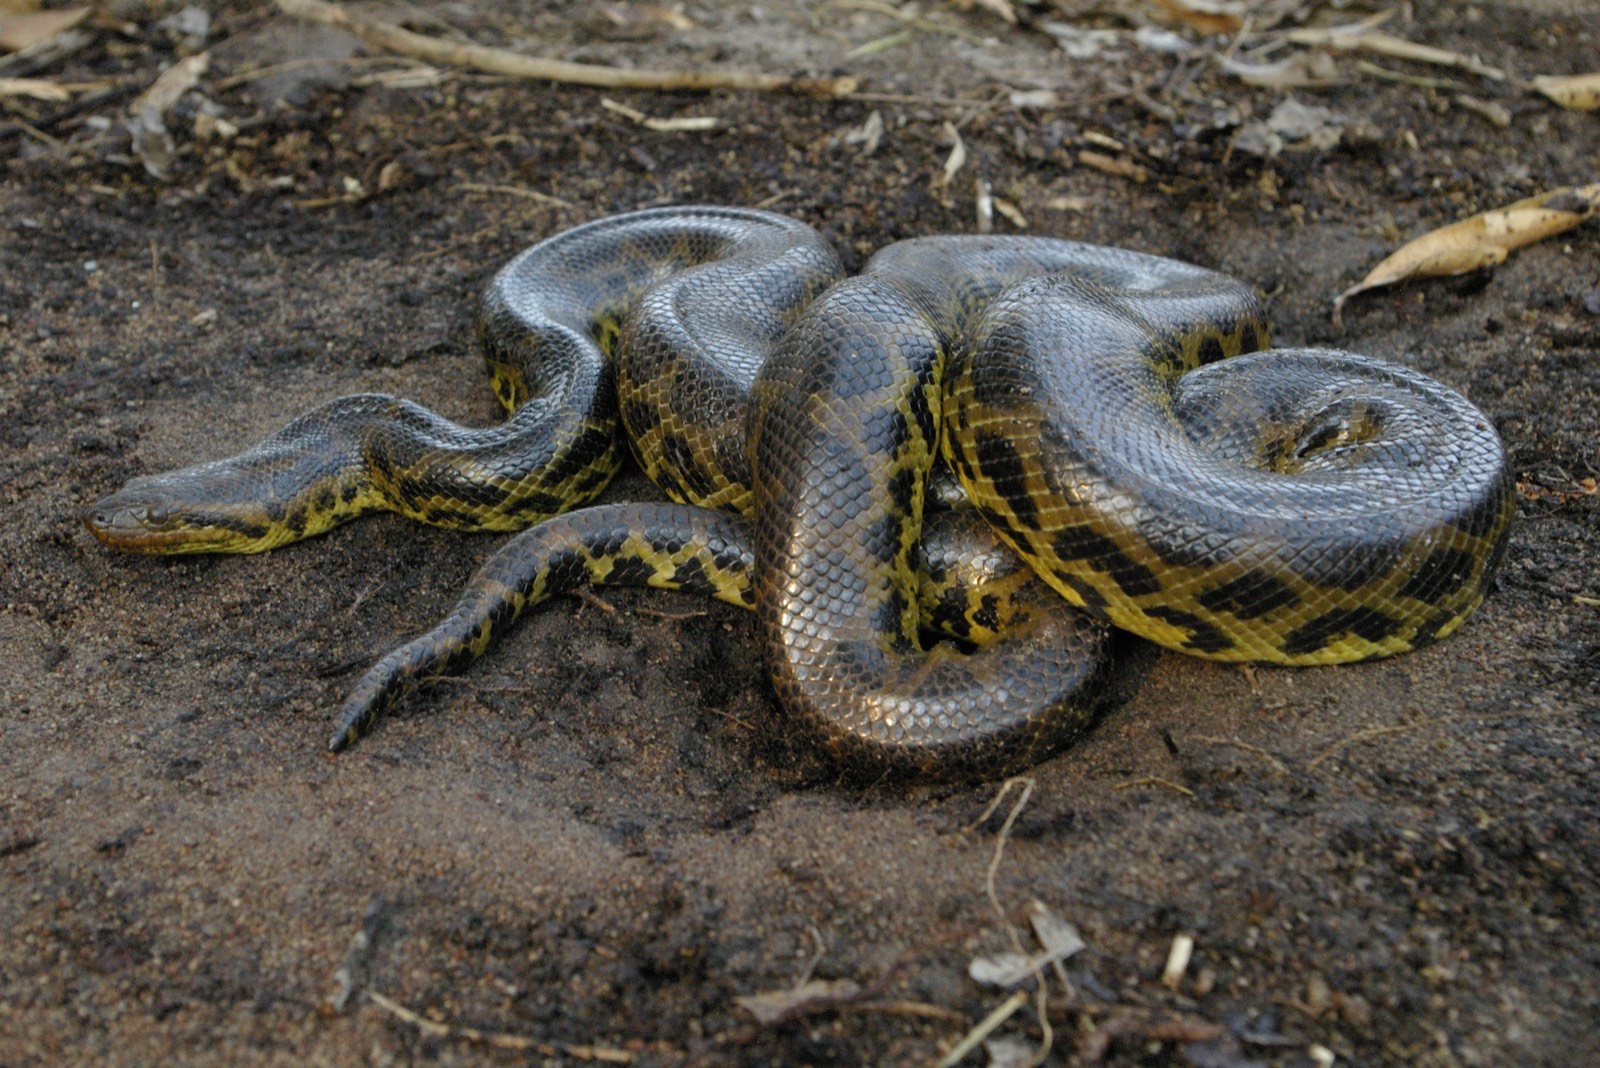 Estudo internacional publicado na Science, com participação de pesquisador da UnB, revela que velocidade evolutiva é o segredo do sucesso das serpentes